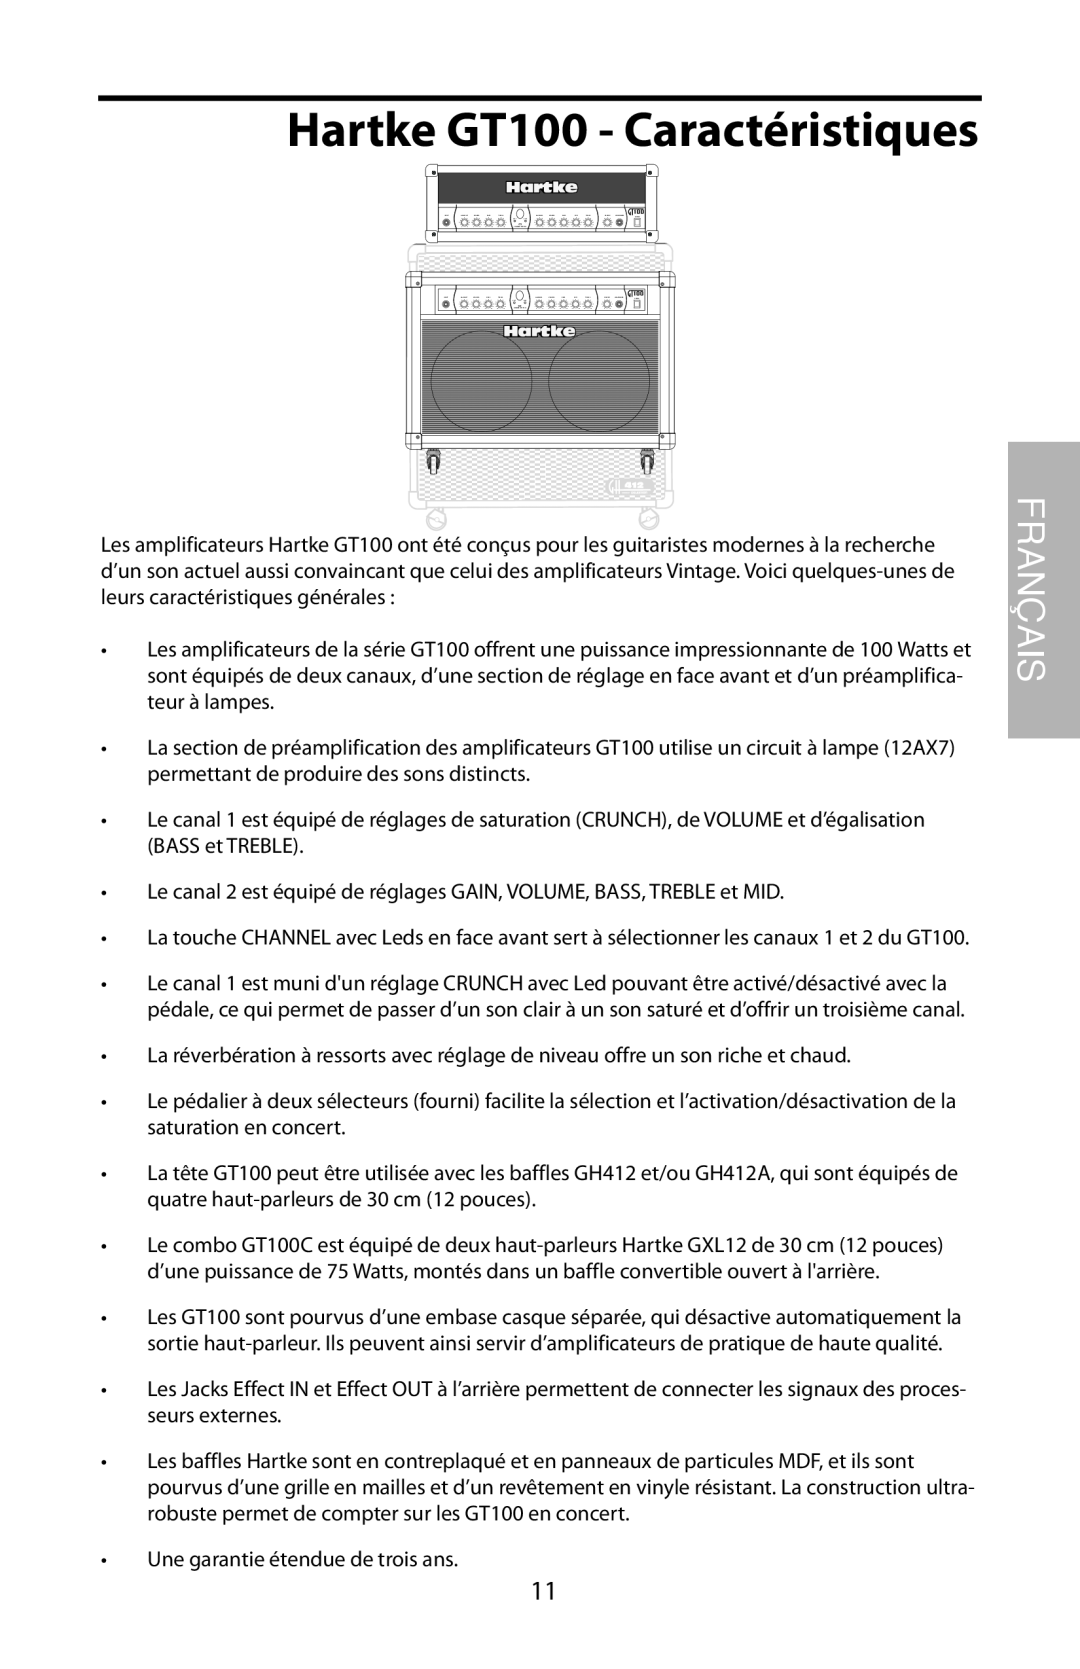 Samson GT100C manual Hartke GT100 - Caractéristiques, Français 